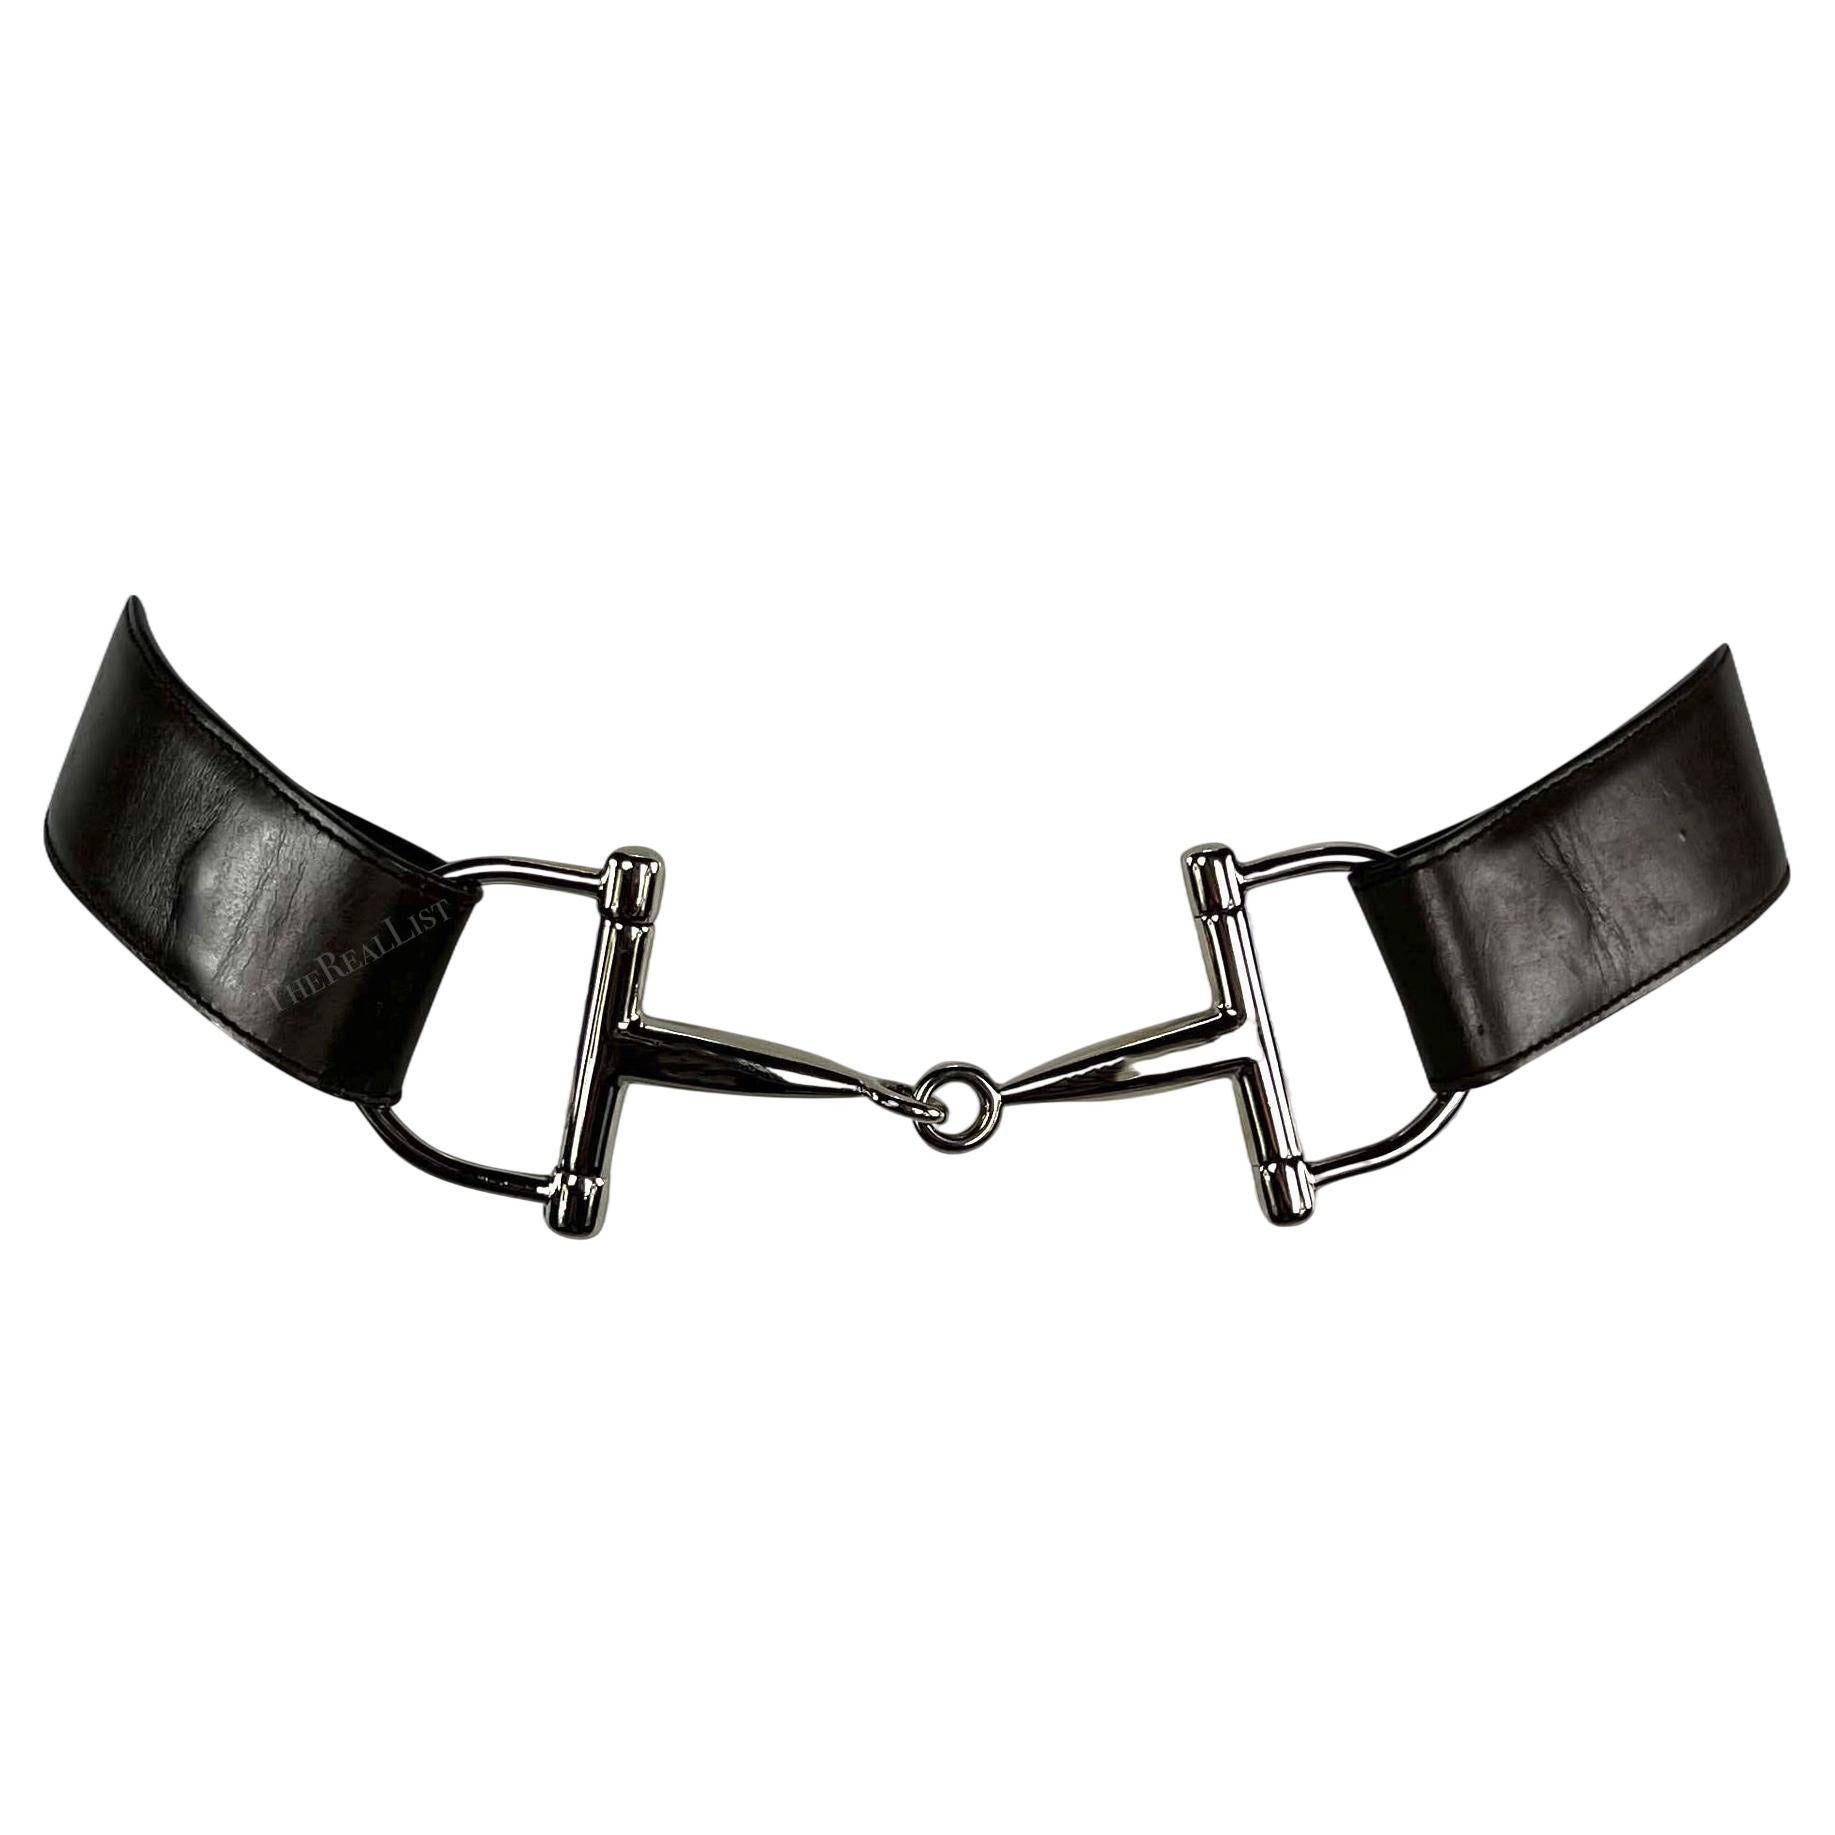 Does Gucci fix belts?